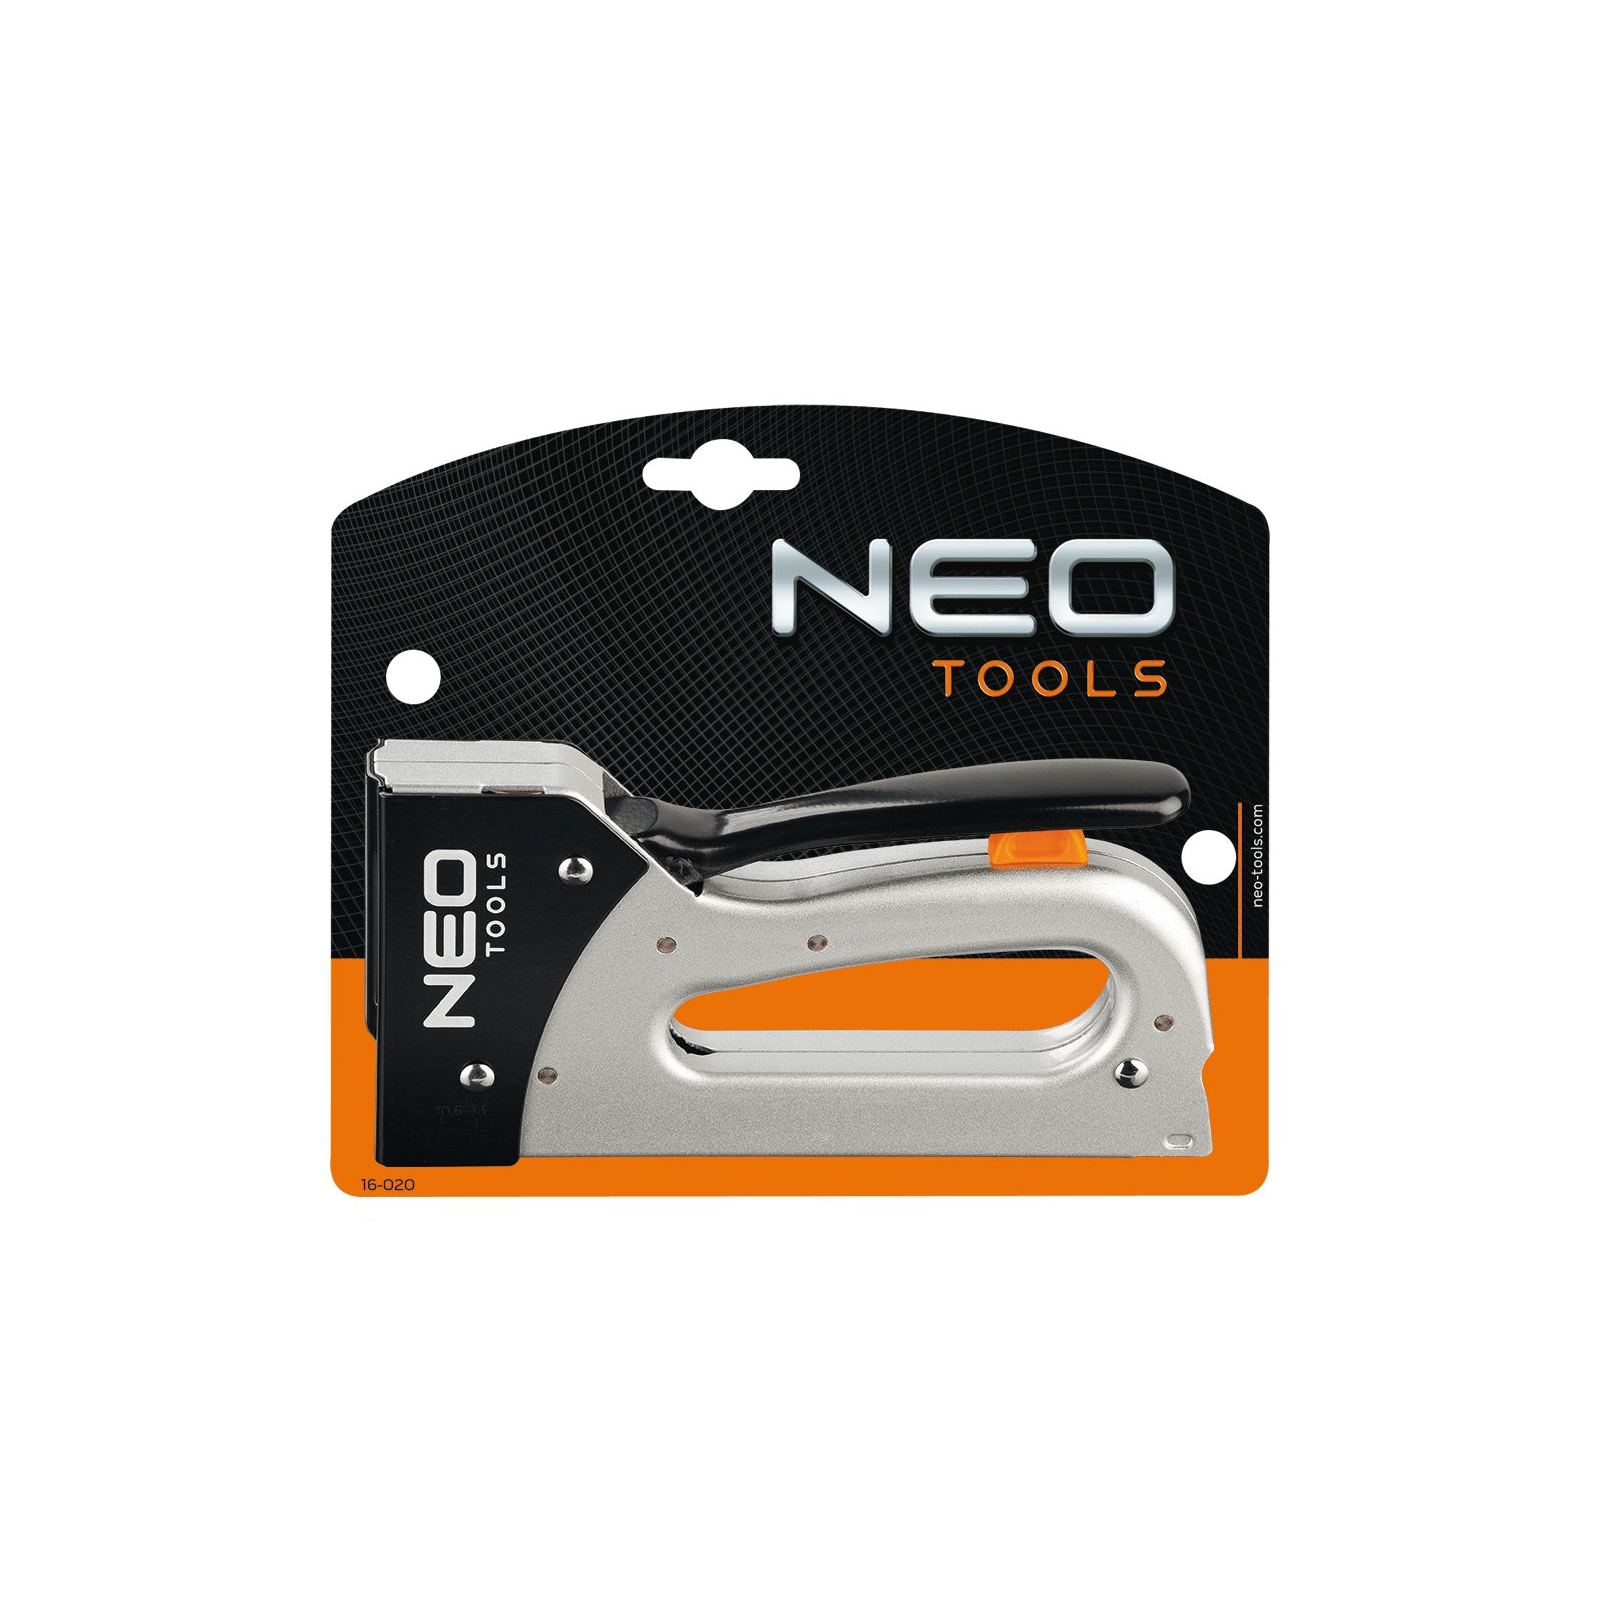 Степлер будівельний Neo Tools 6-12 мм, скоба J (16-020) зображення 2